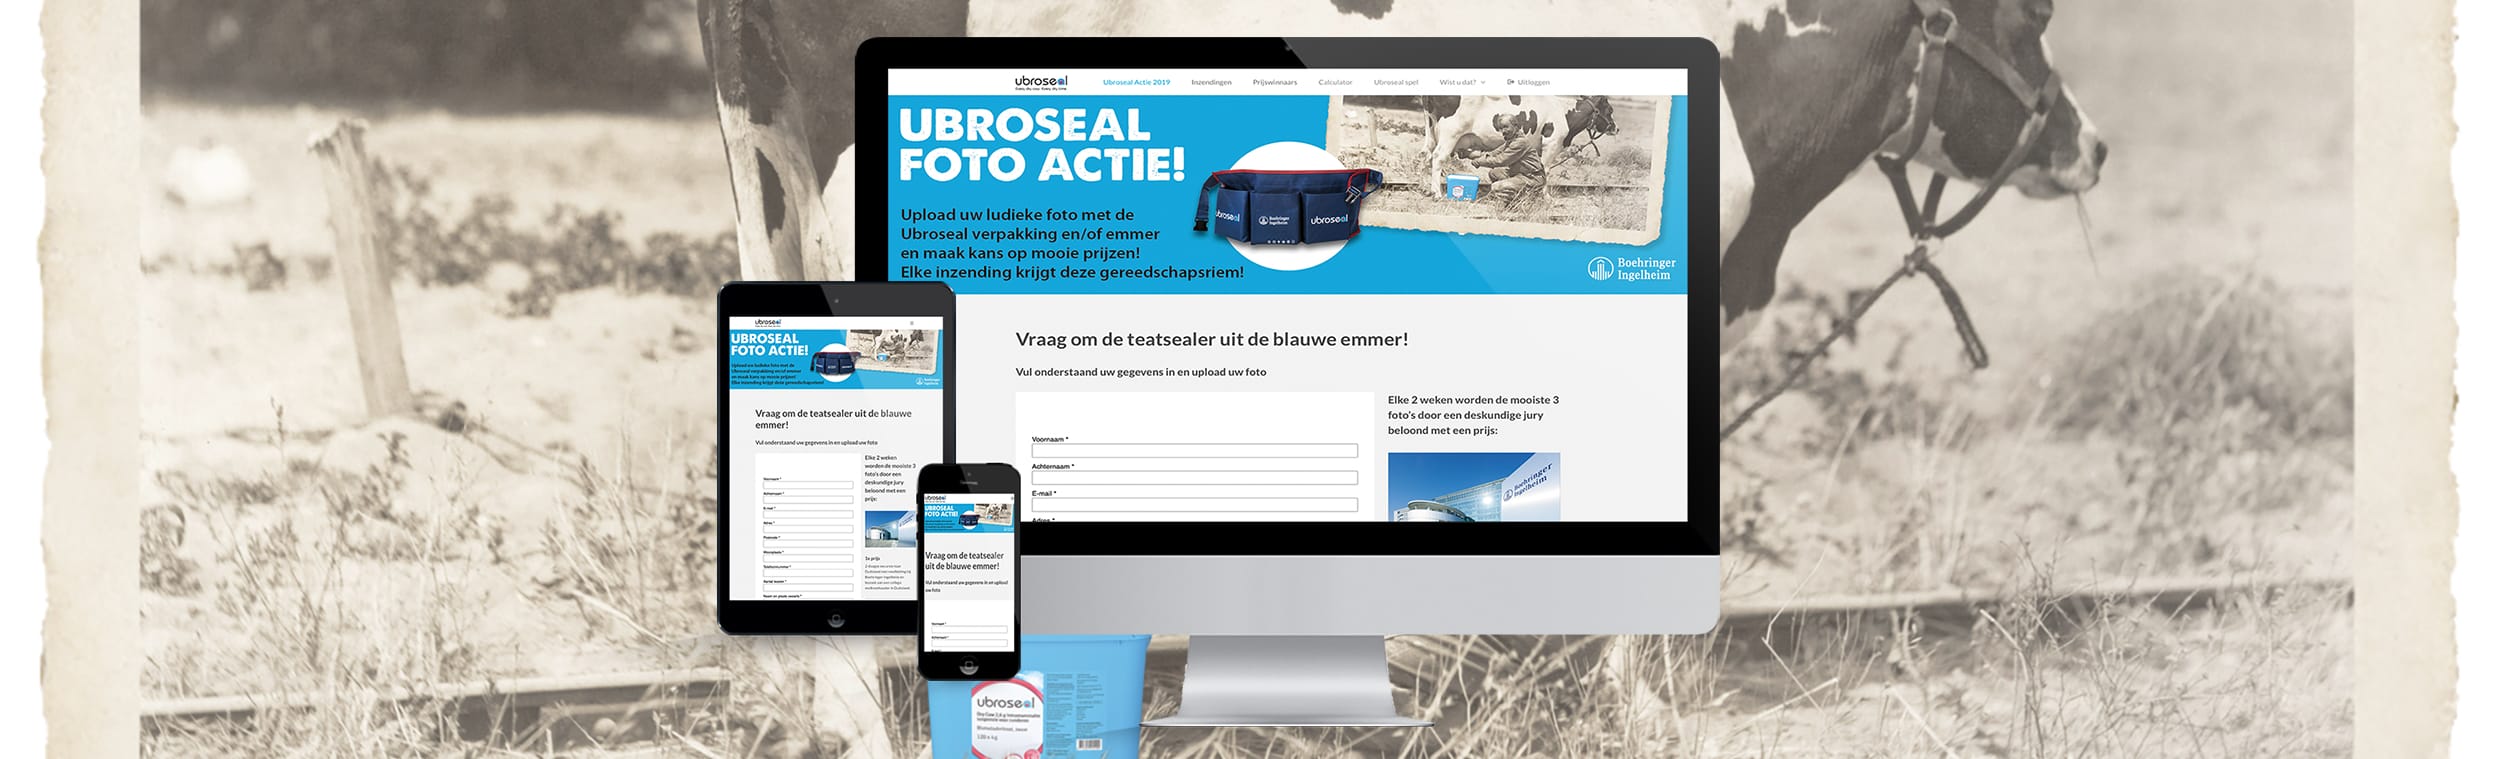 portfolio-boehringer-ingelheim-urboseal-website